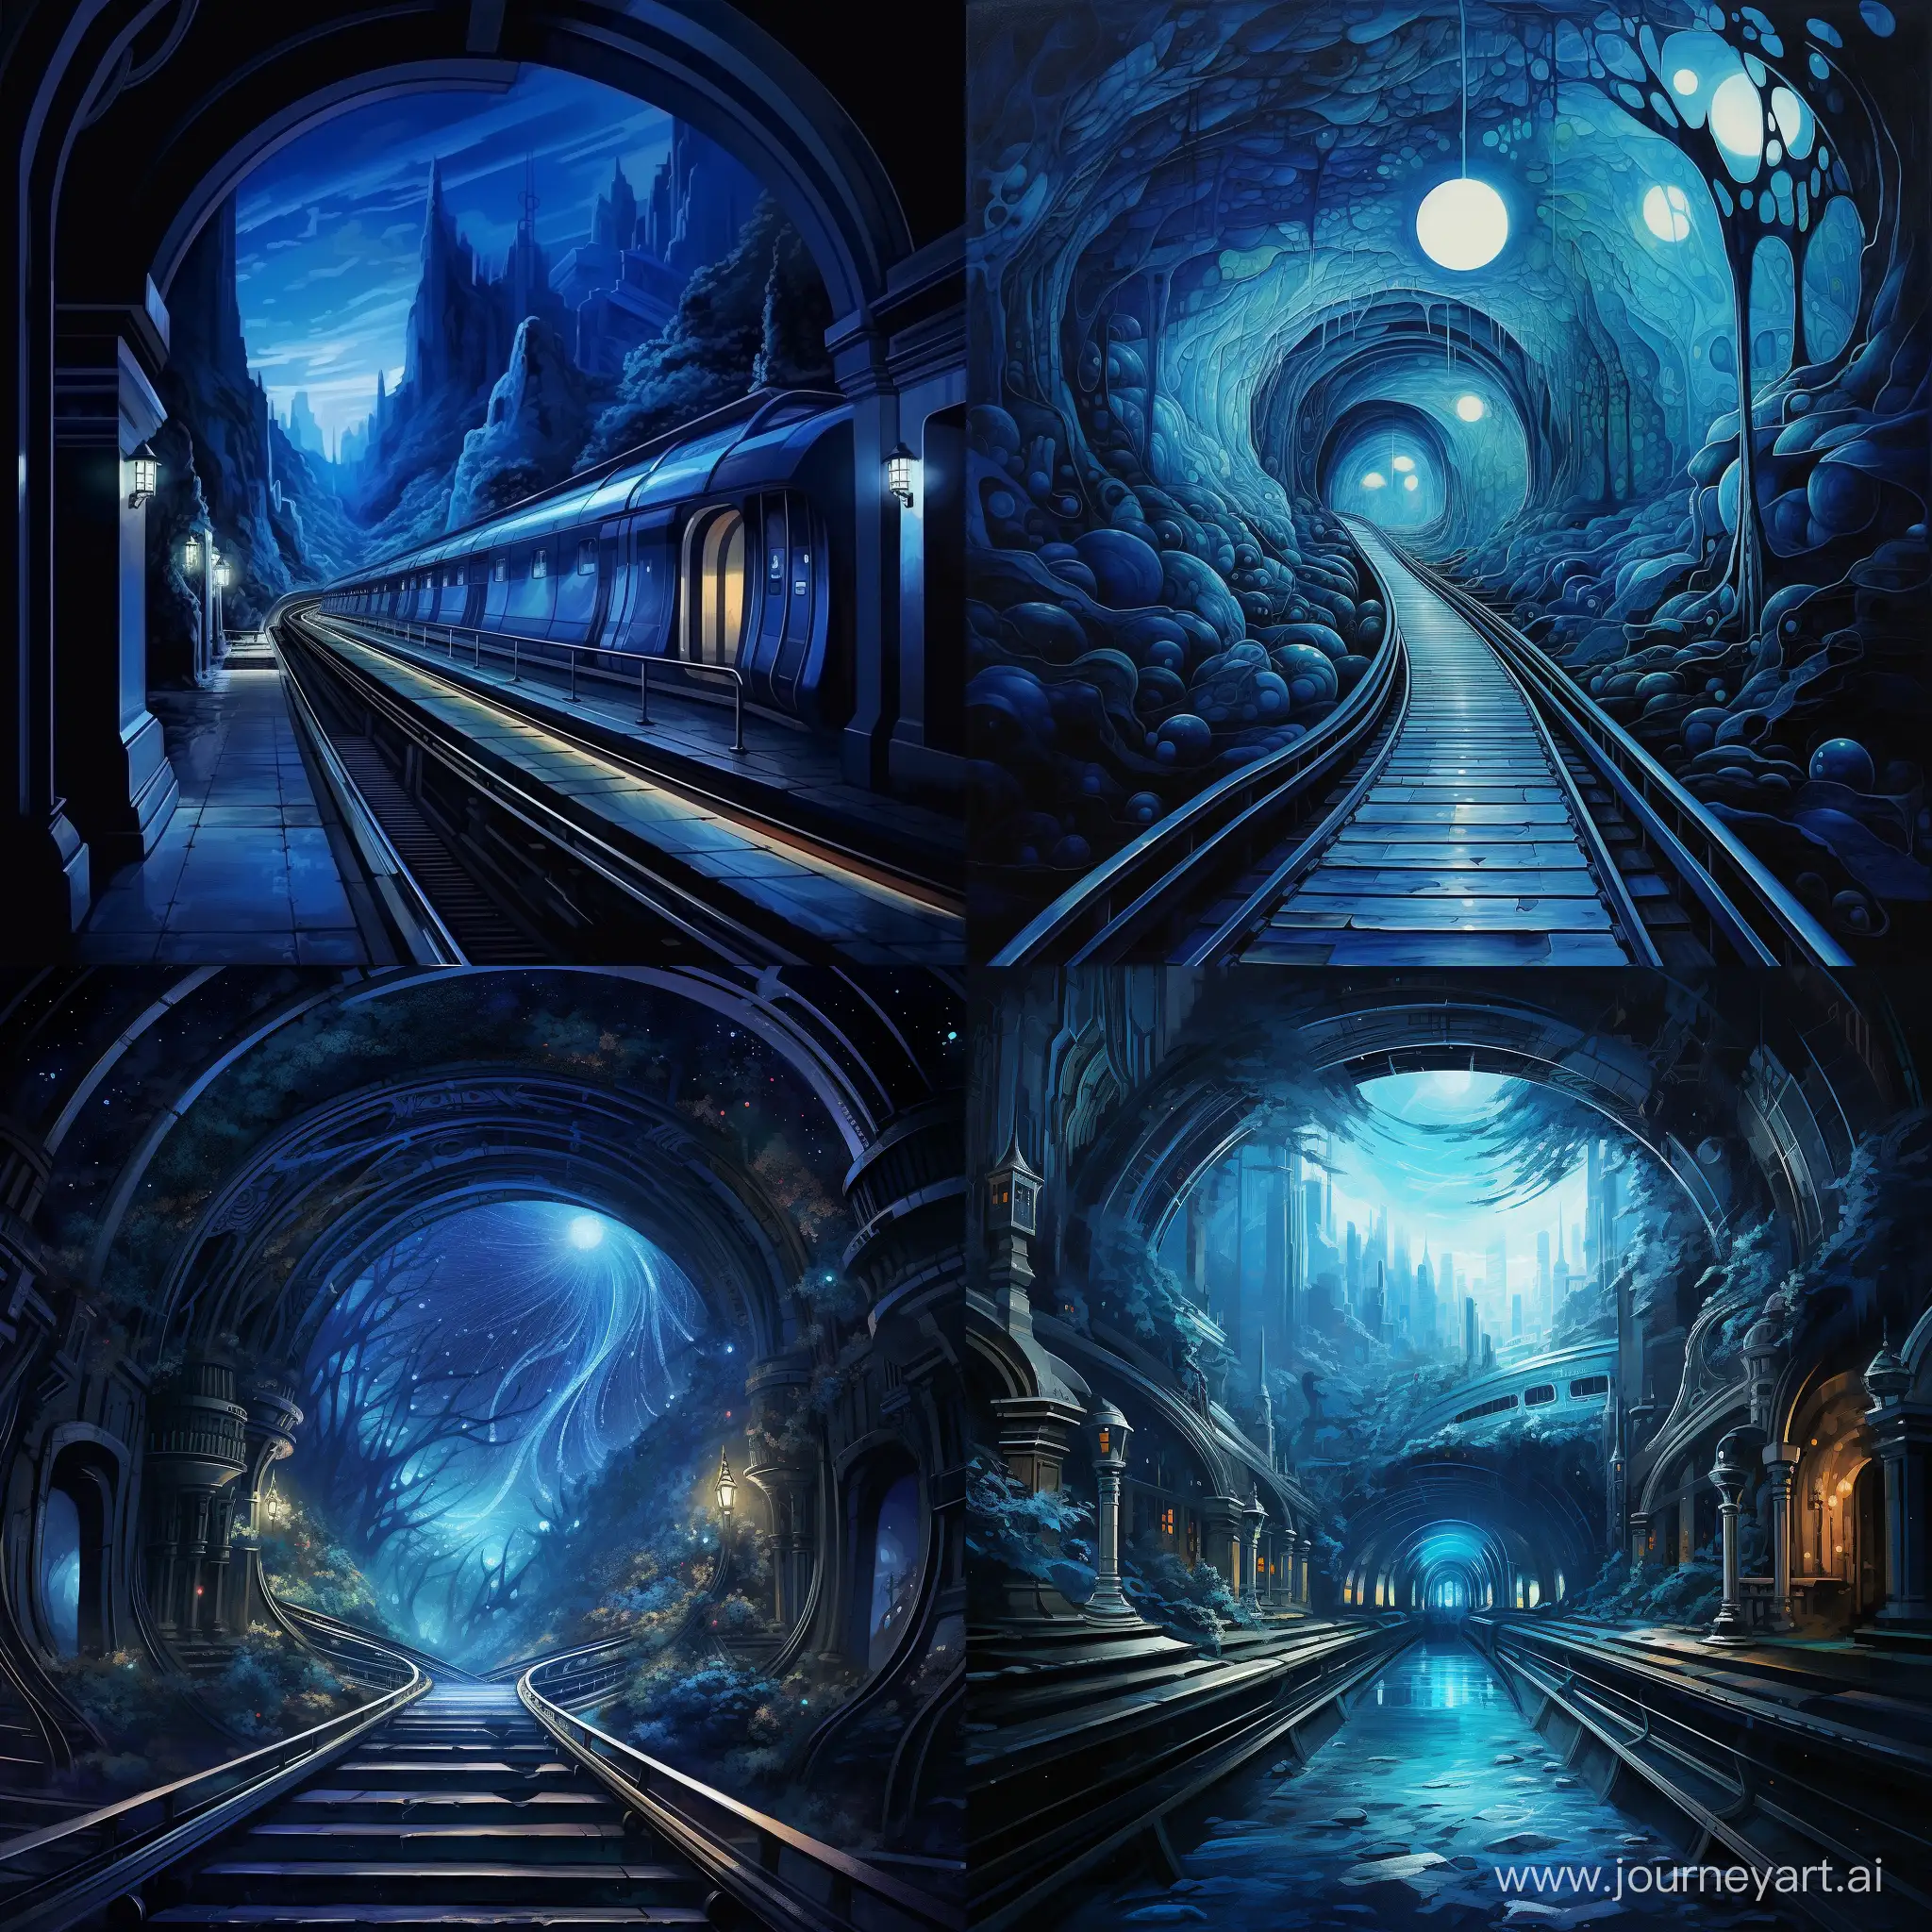 Столичное ночное, пустое  метро, одинокий поезд в окружённый синим сиянием въезжает в туннельный портал. высокохудожественный арт.